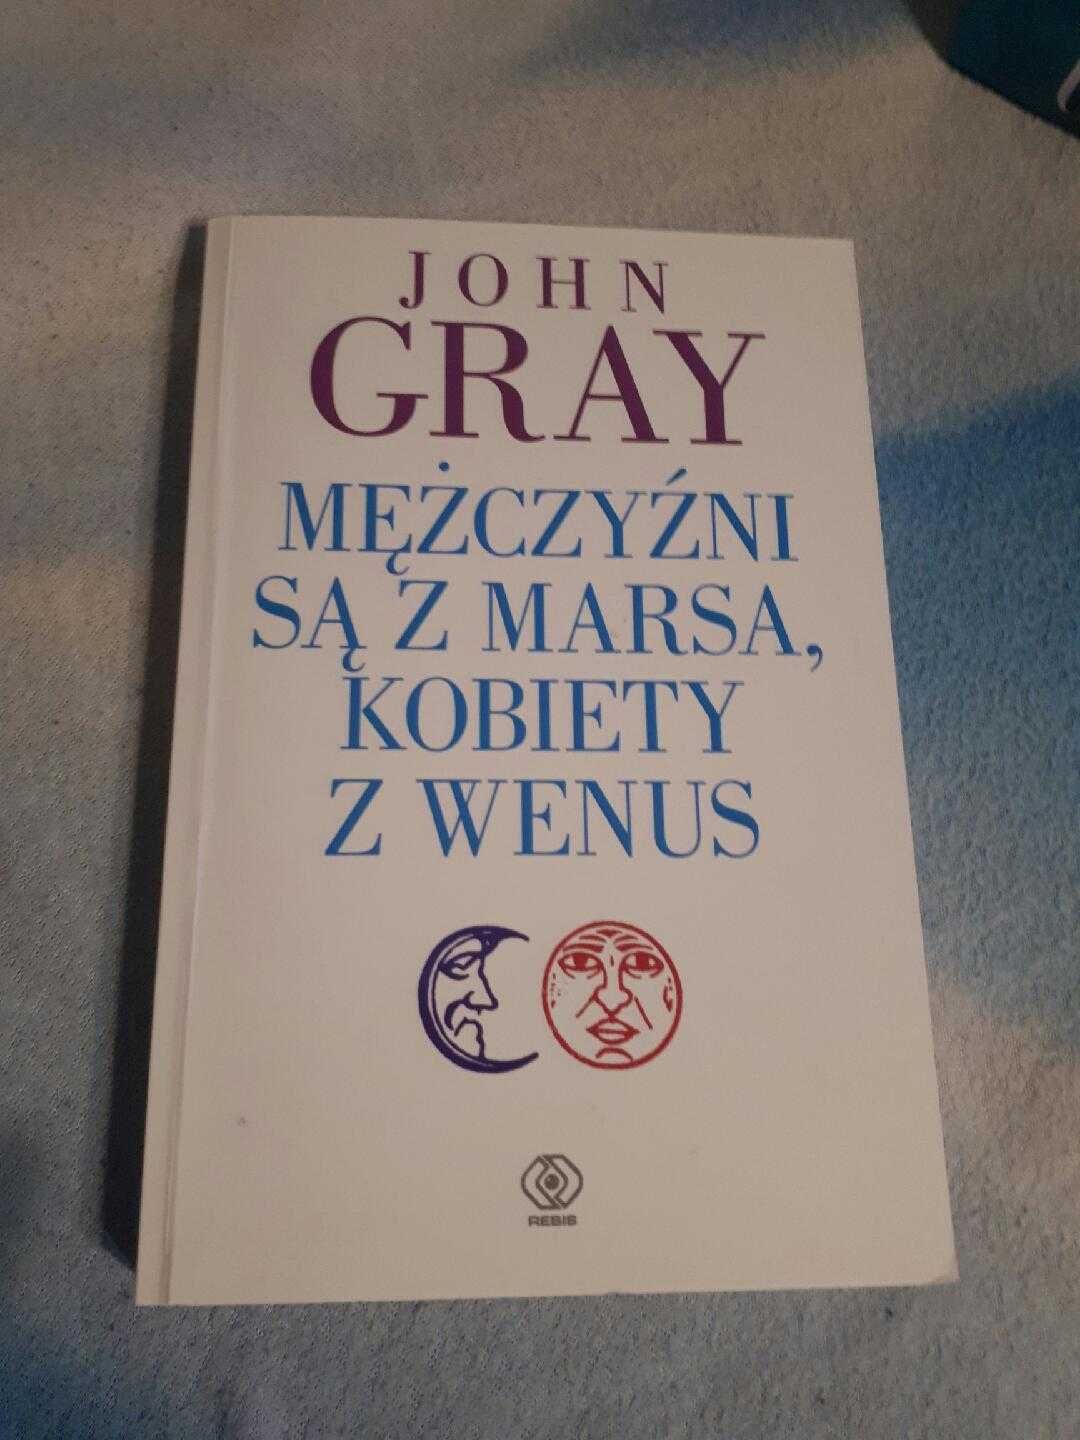 John Gray - Wenus Kobiety i Mars Mężczyźni